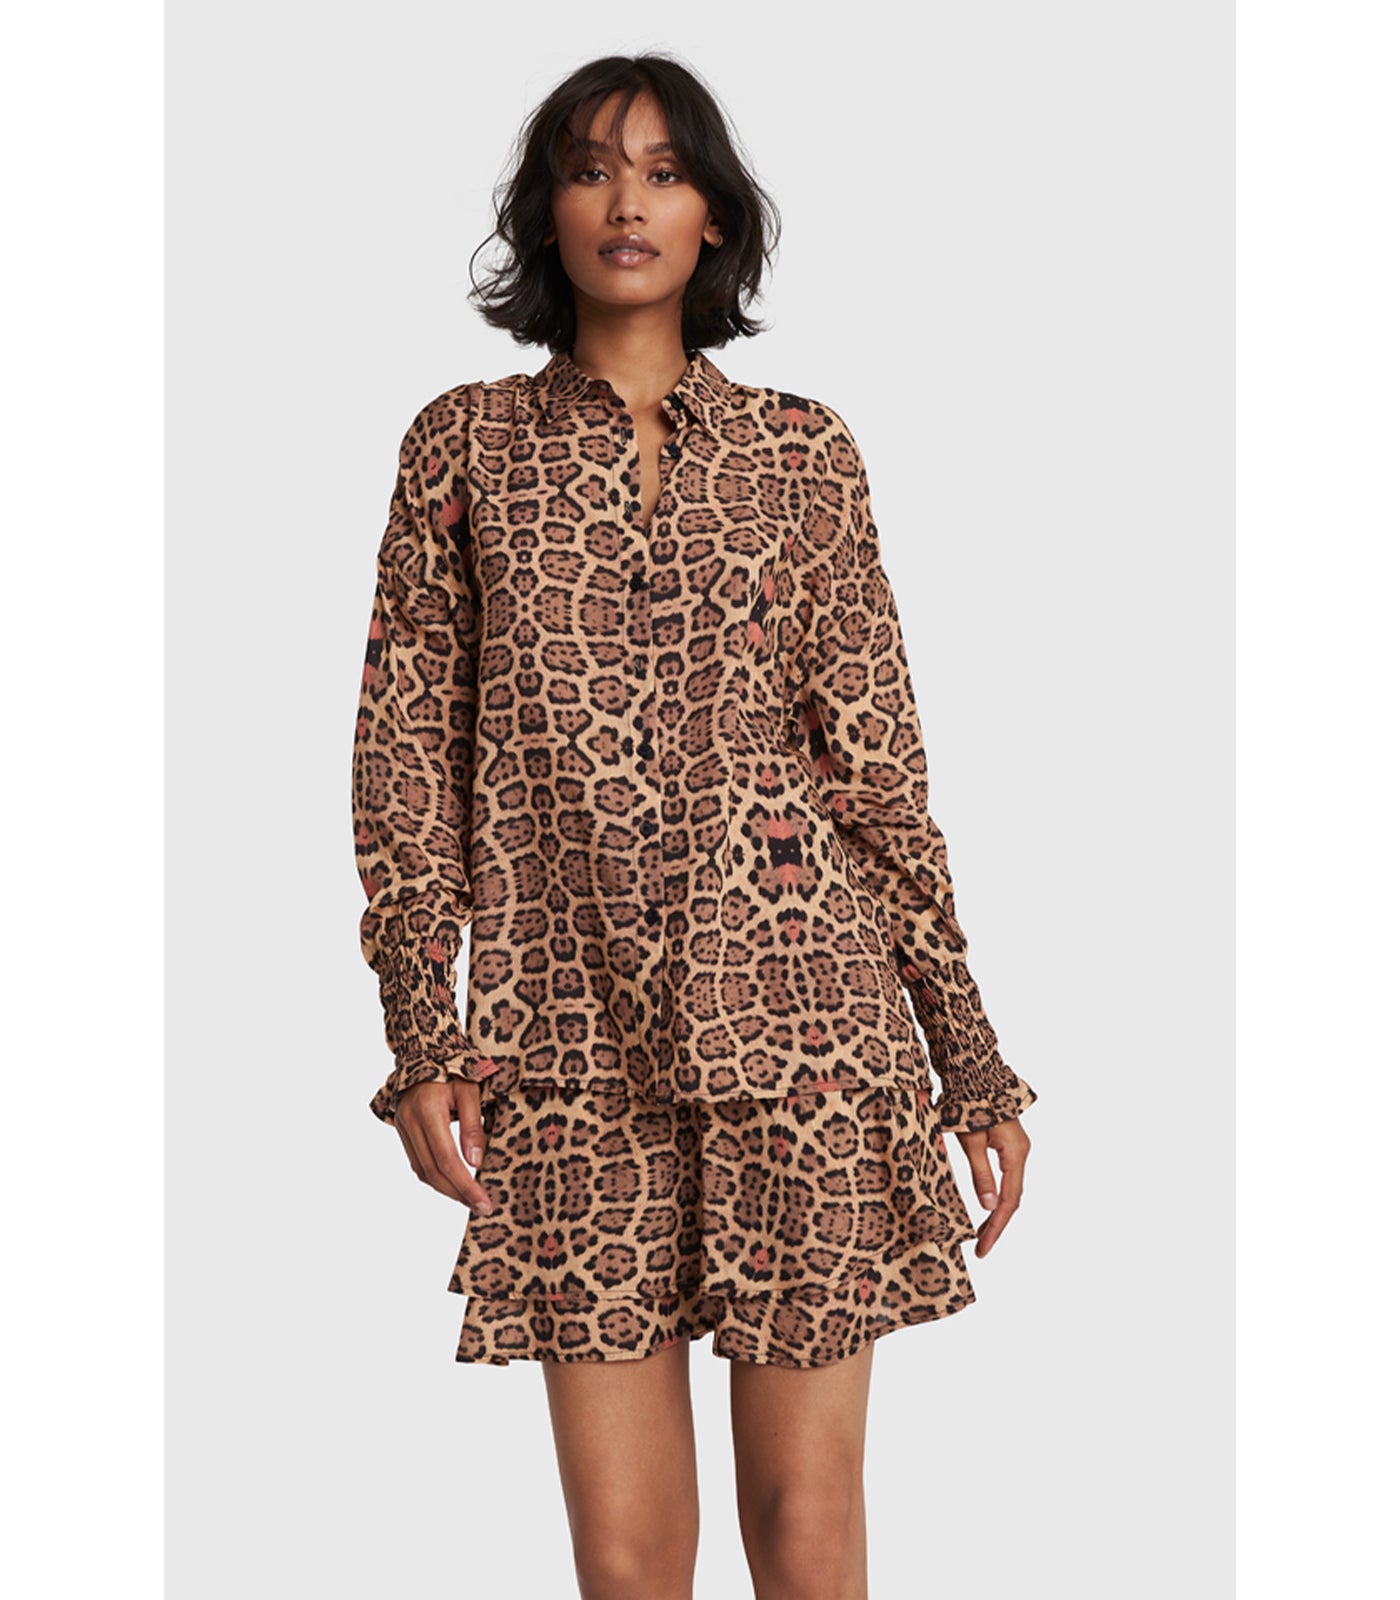 Viscose blouse - leopard